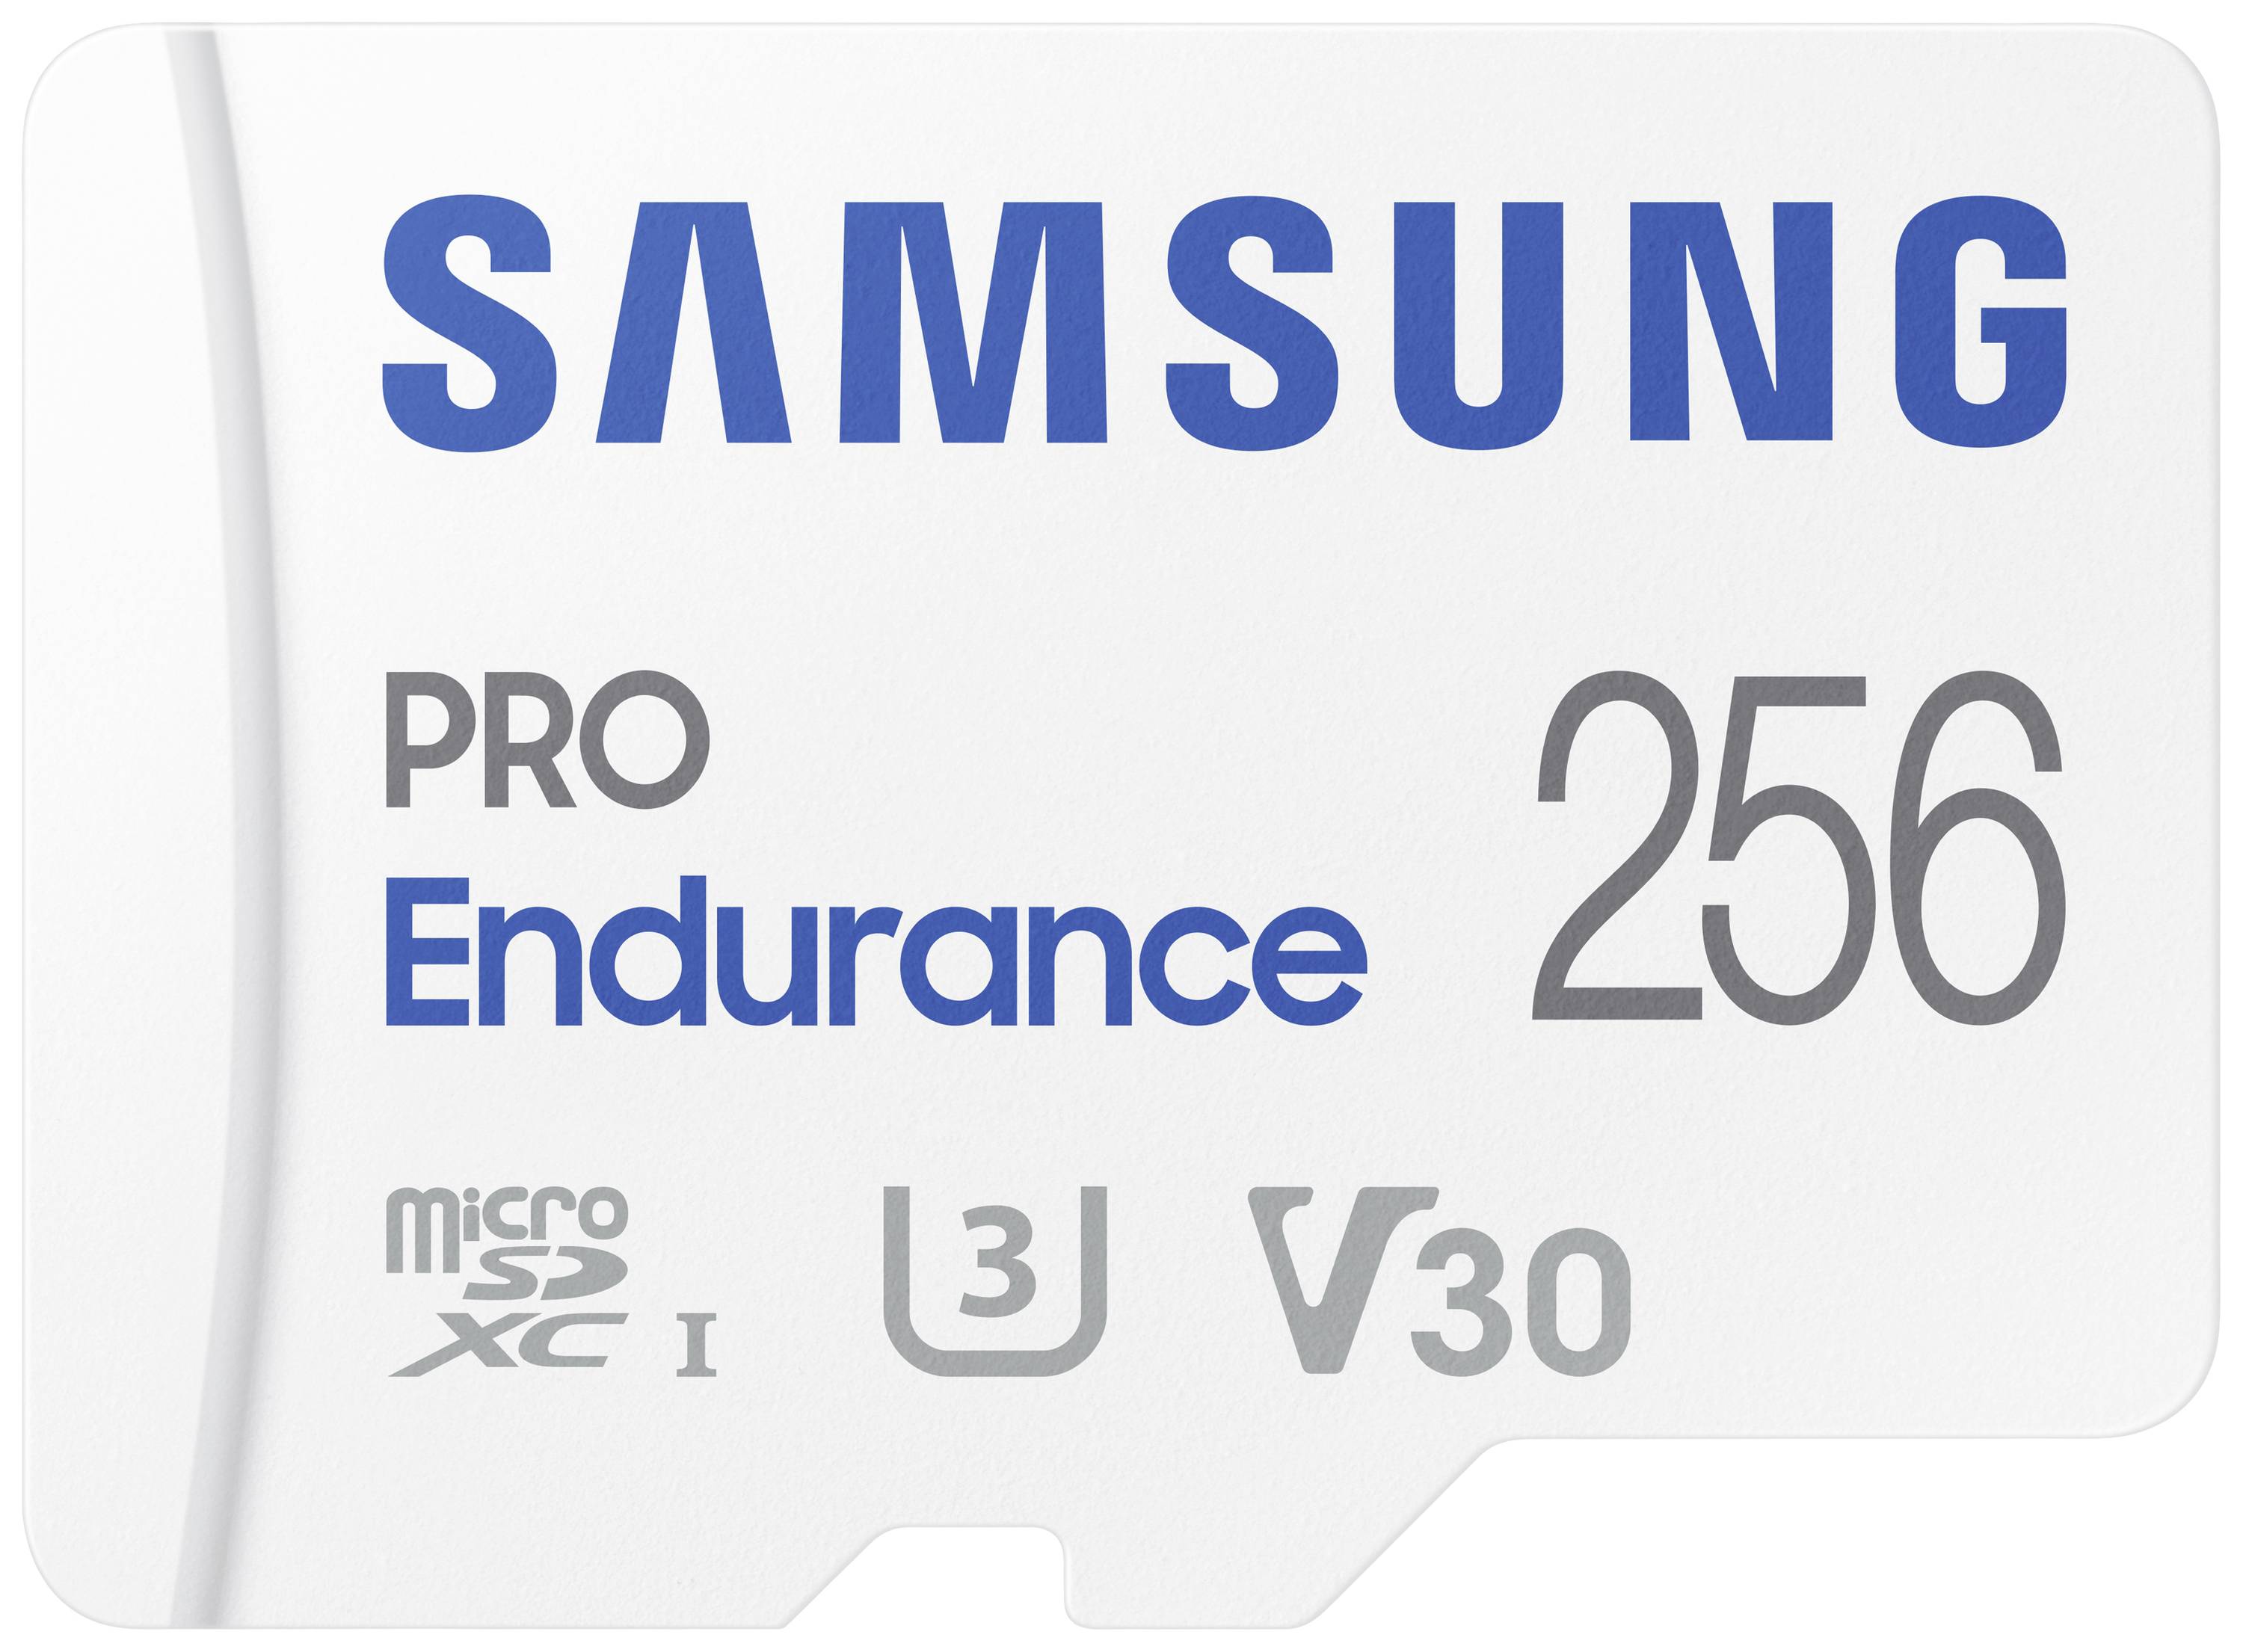 SAMSUNG SDXC PRO Endurance (Class10) 256GB